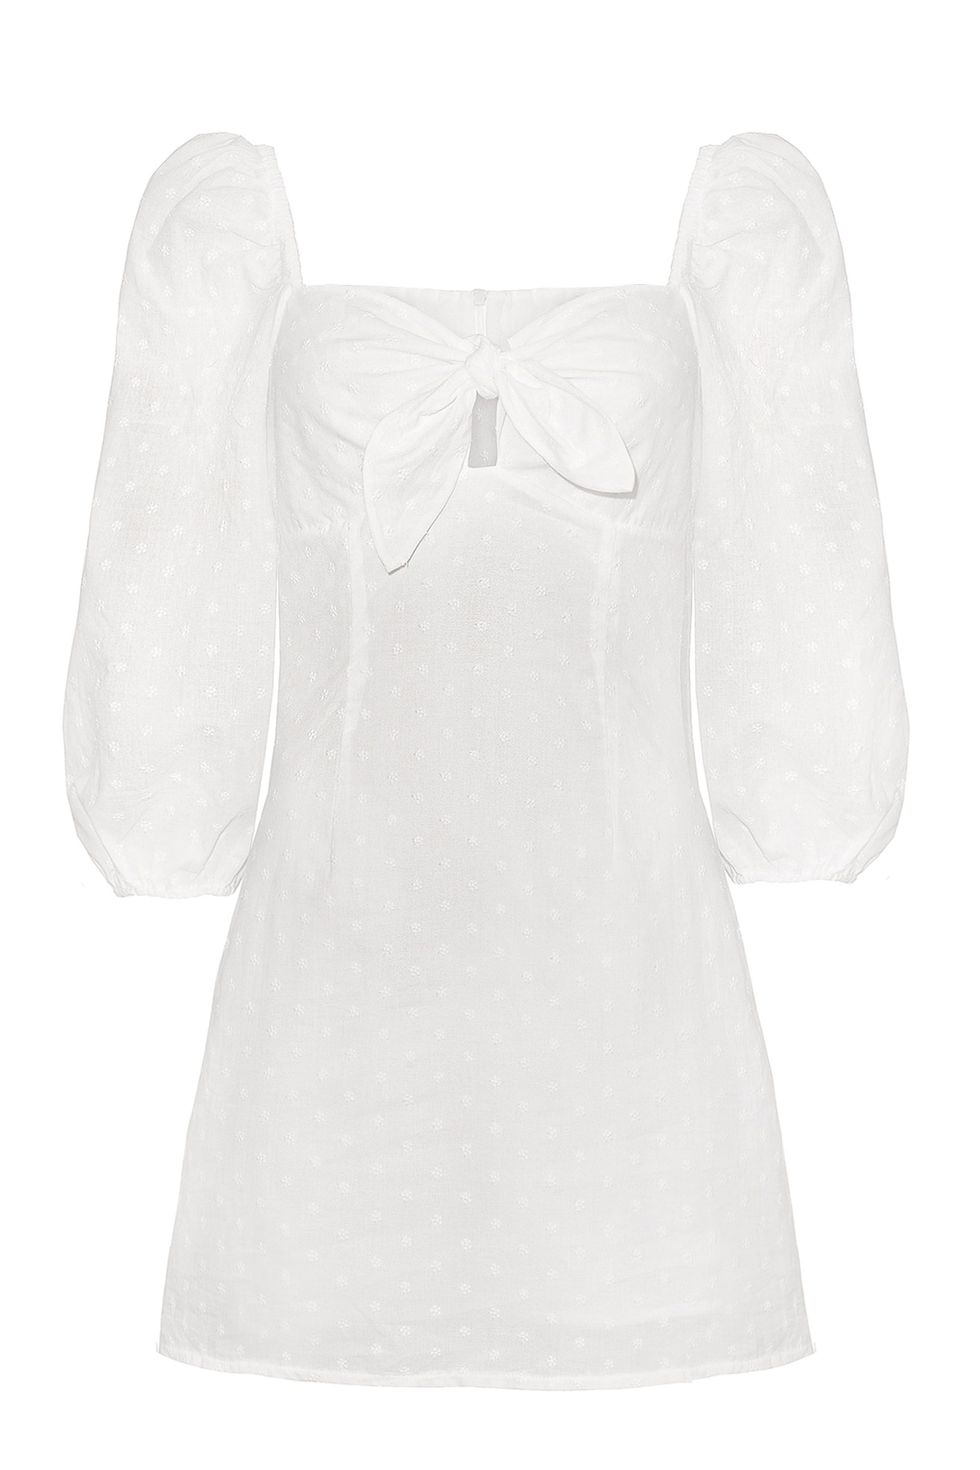 Best White Summer Dresses for 2017 - Our Favorite Little White Dress ...